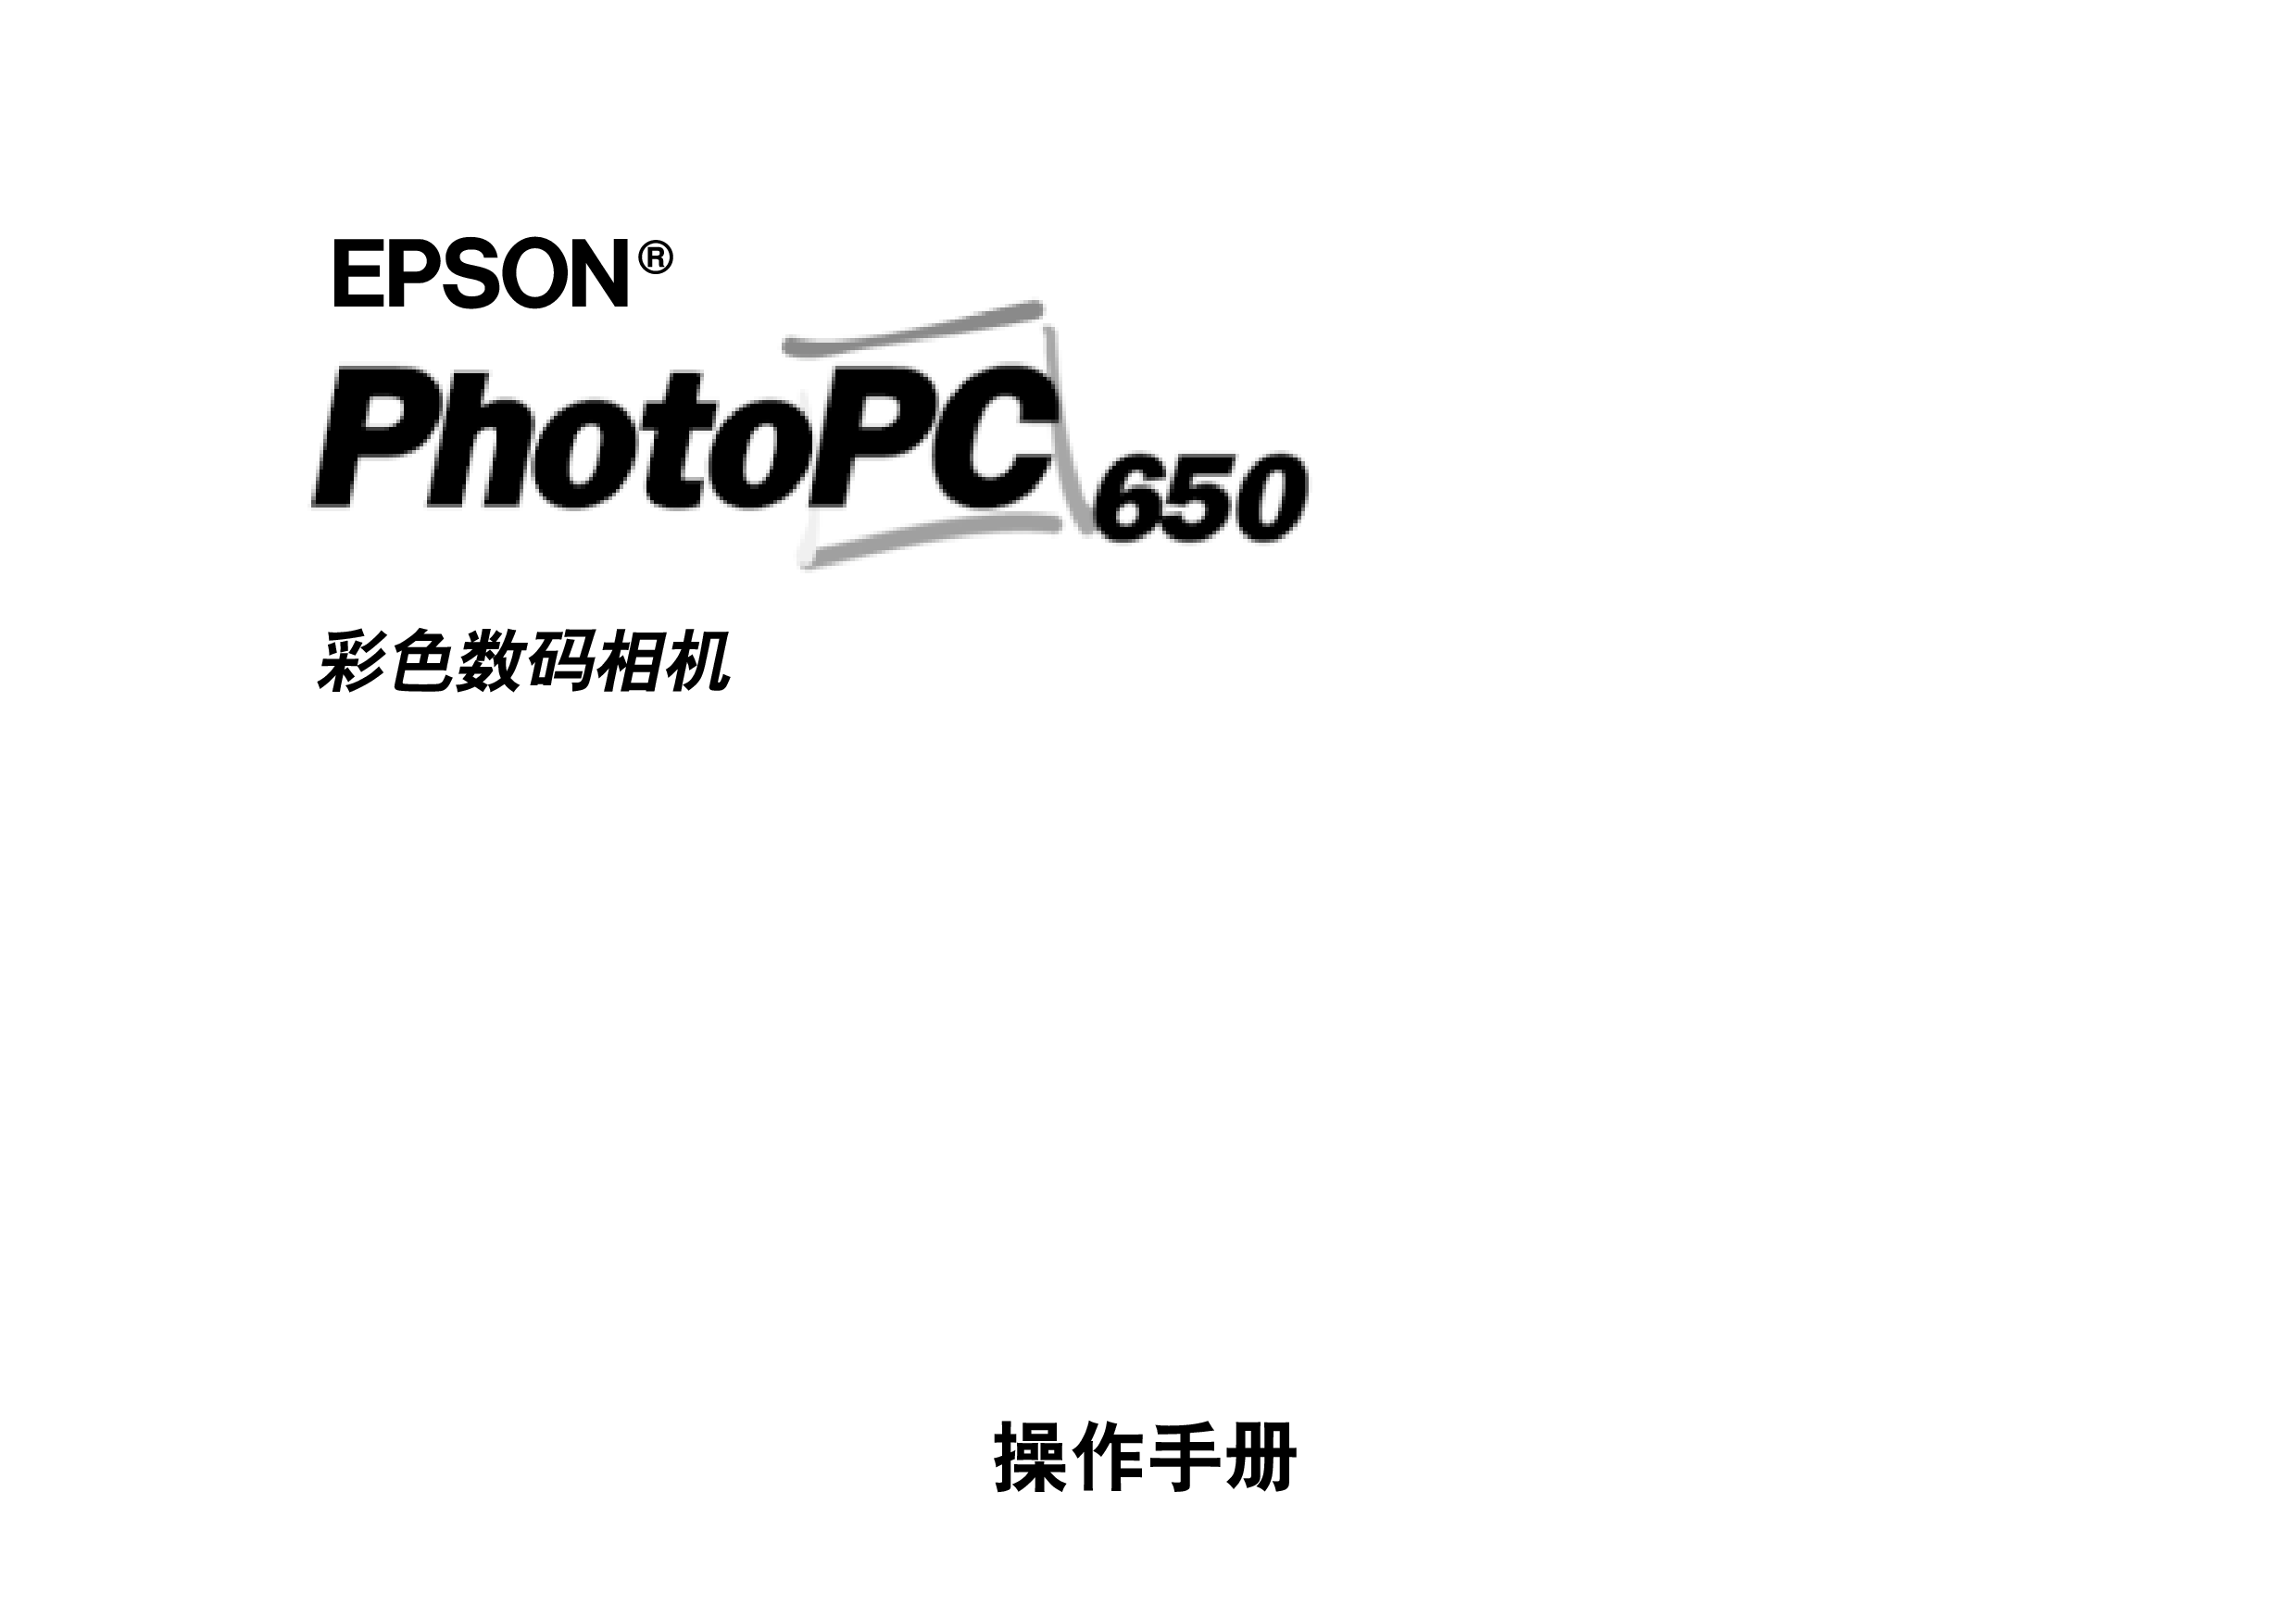 爱普生 Epson PhotoPC 650 用户指南 封面